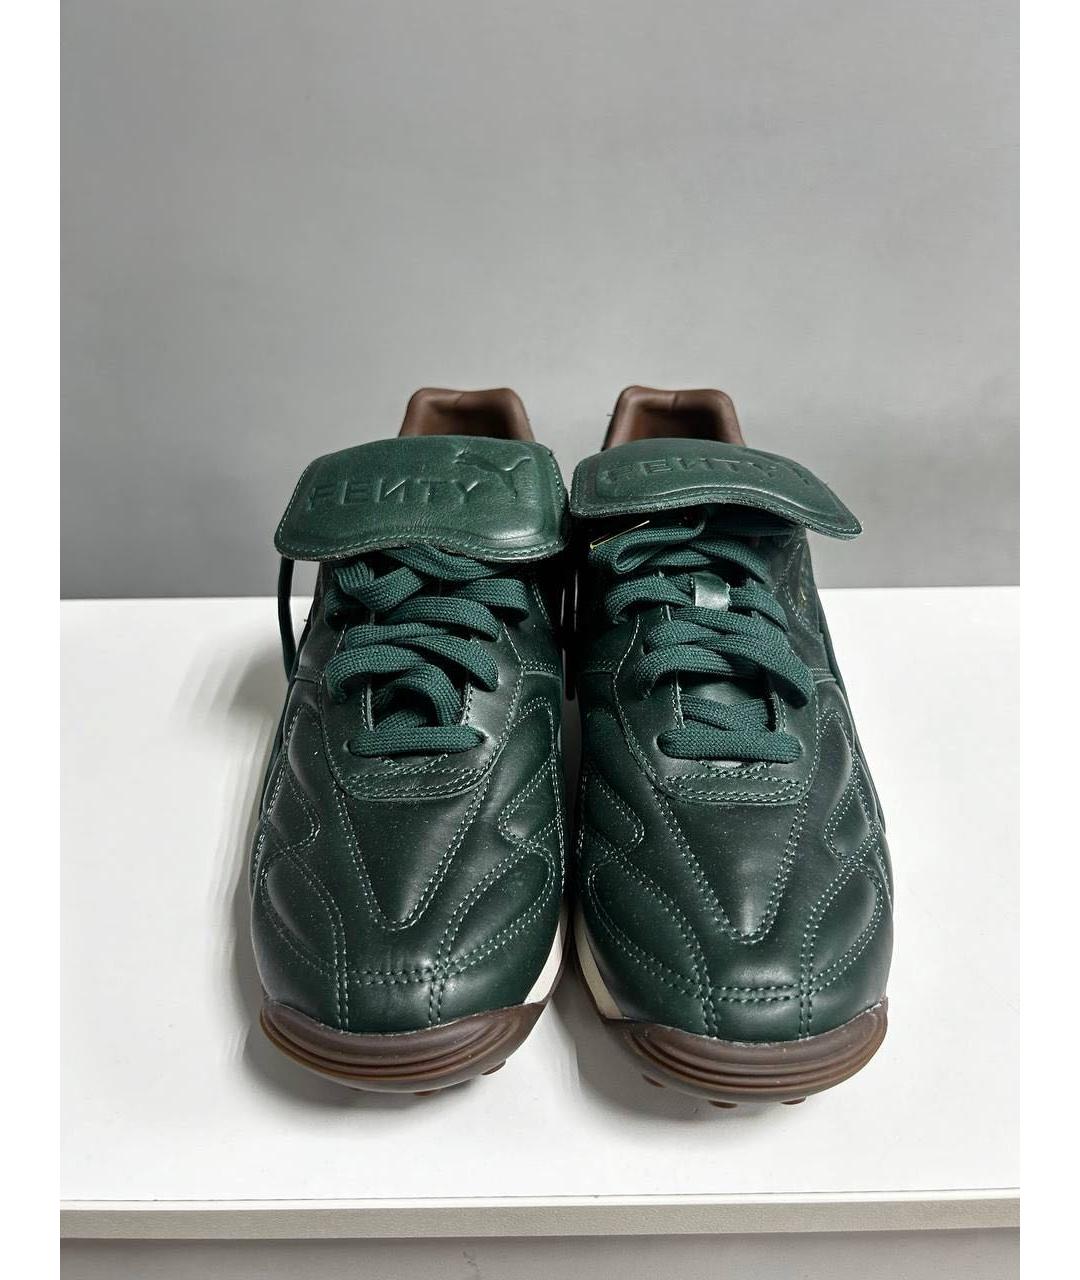 FENTY X PUMA Зеленые кожаные низкие кроссовки / кеды, фото 2